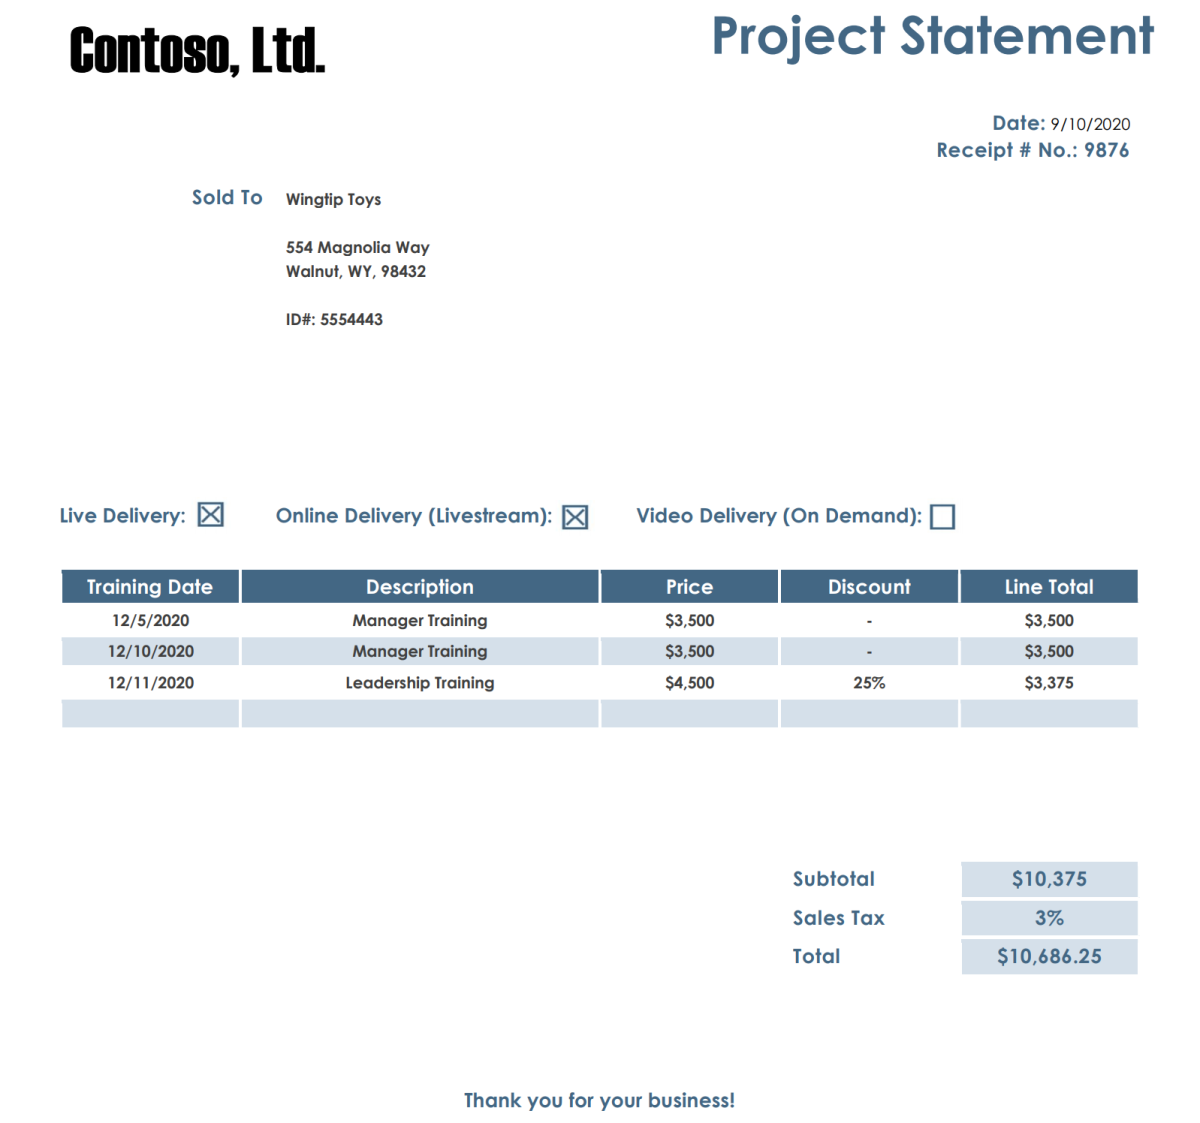 Skärmbild av Contosos projektuttrycksdokument med en tabell.